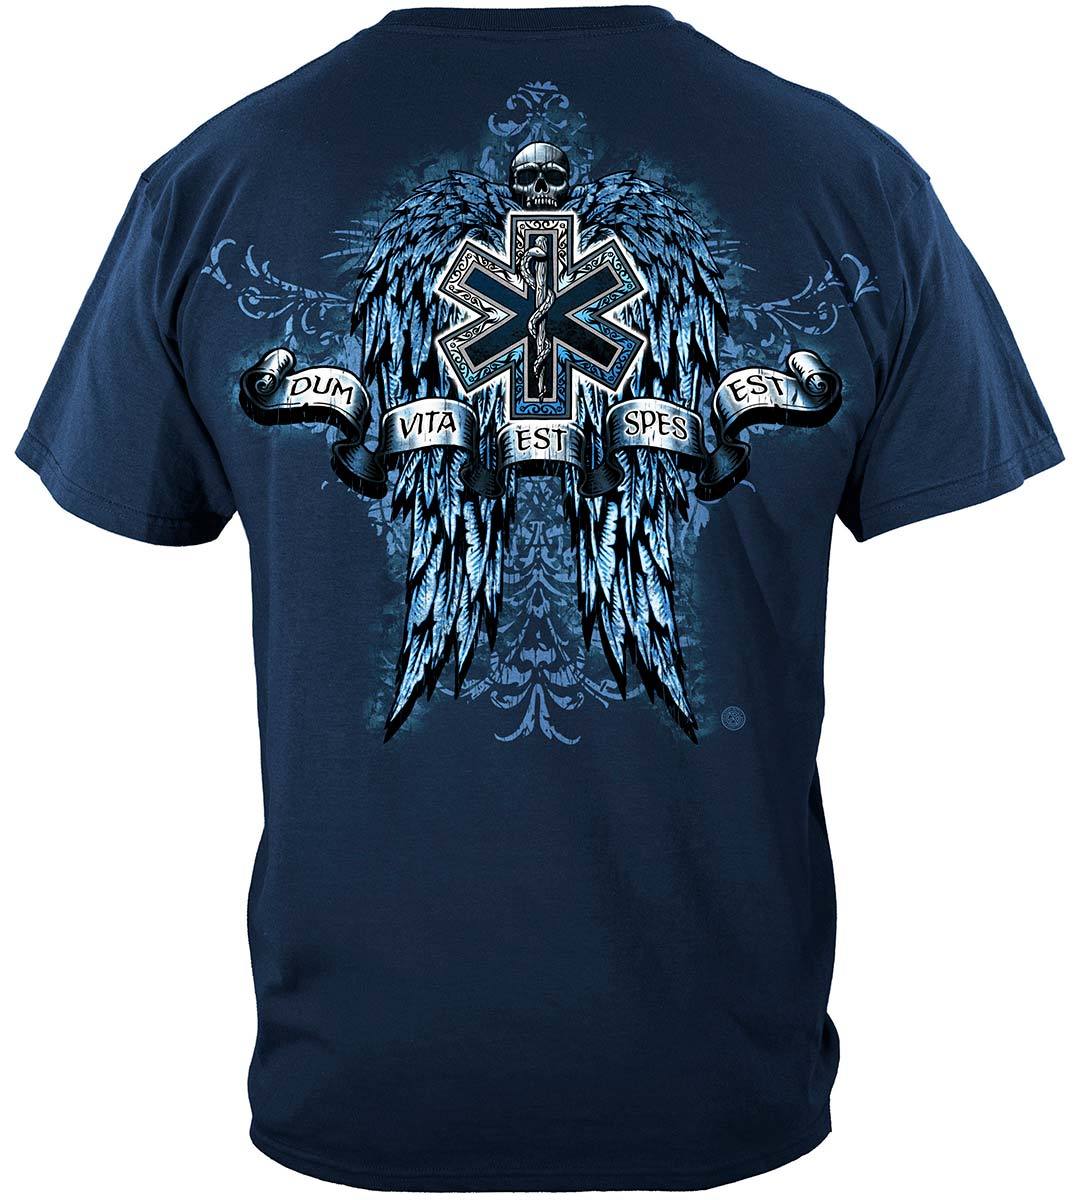 EMS Skull Wings Full Premium T-Shirt